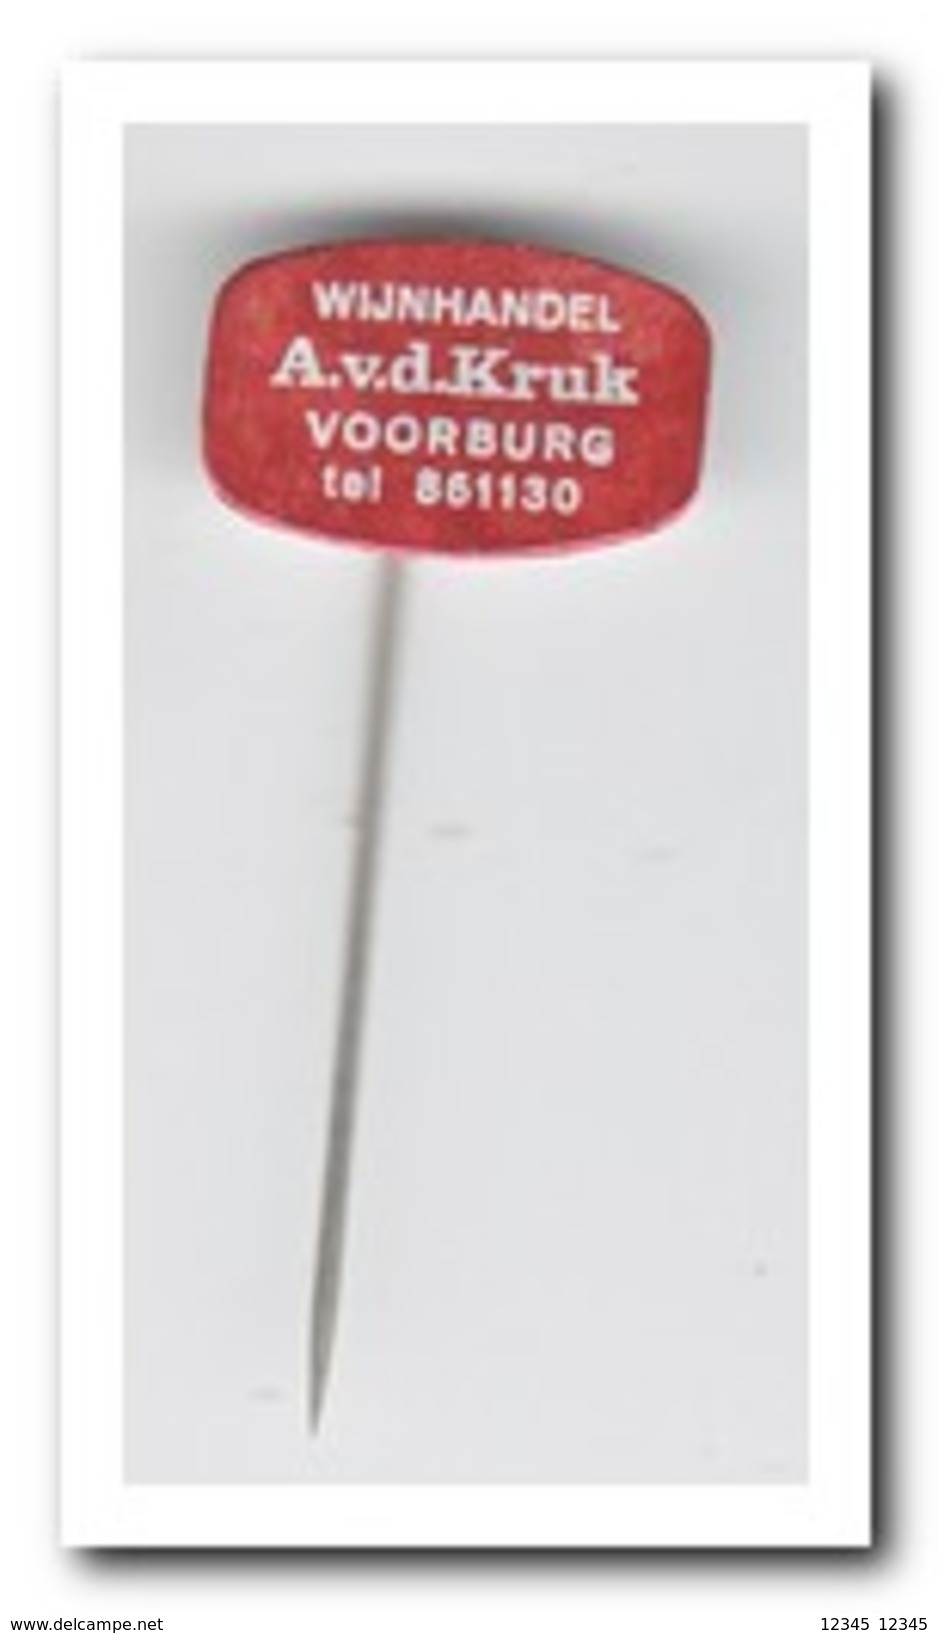 A. V.d. Kruk Wijnhandel Voorburg - Unclassified